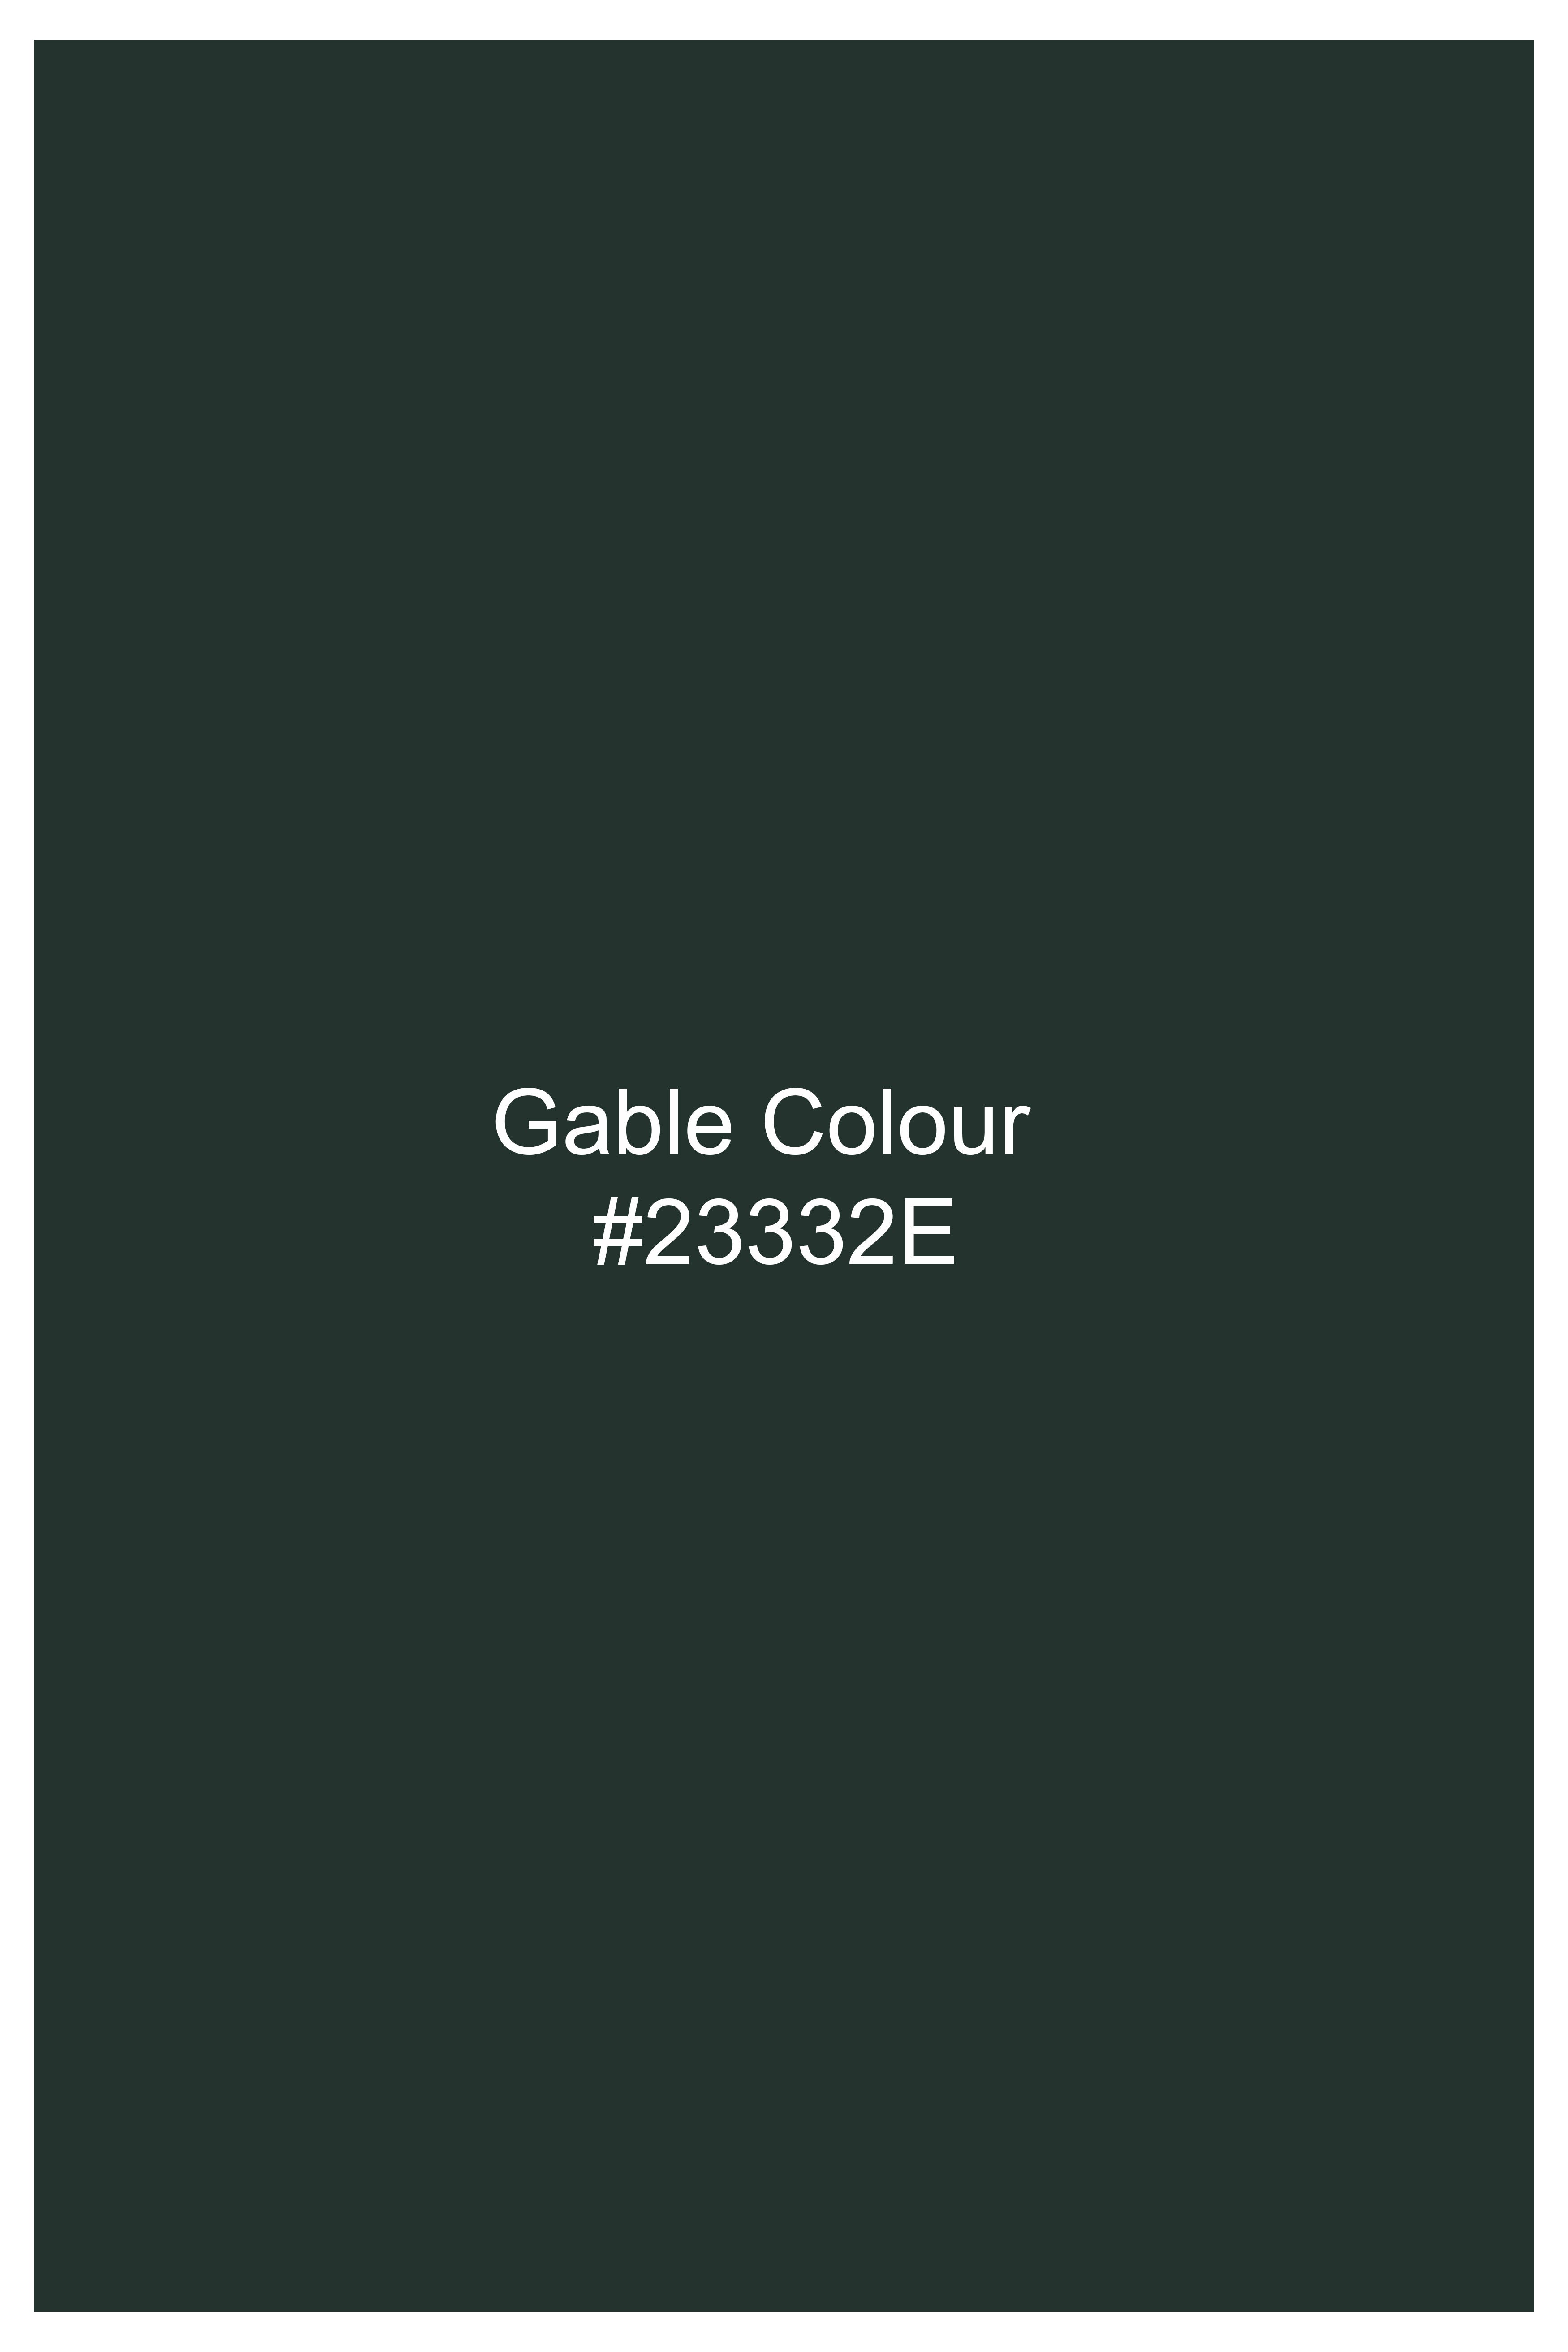 Gable Green Wool Rich Pant T2728-28, T2728-30, T2728-32, T2728-34, T2728-36, T2728-38, T2728-40, T2728-42, T2728-44